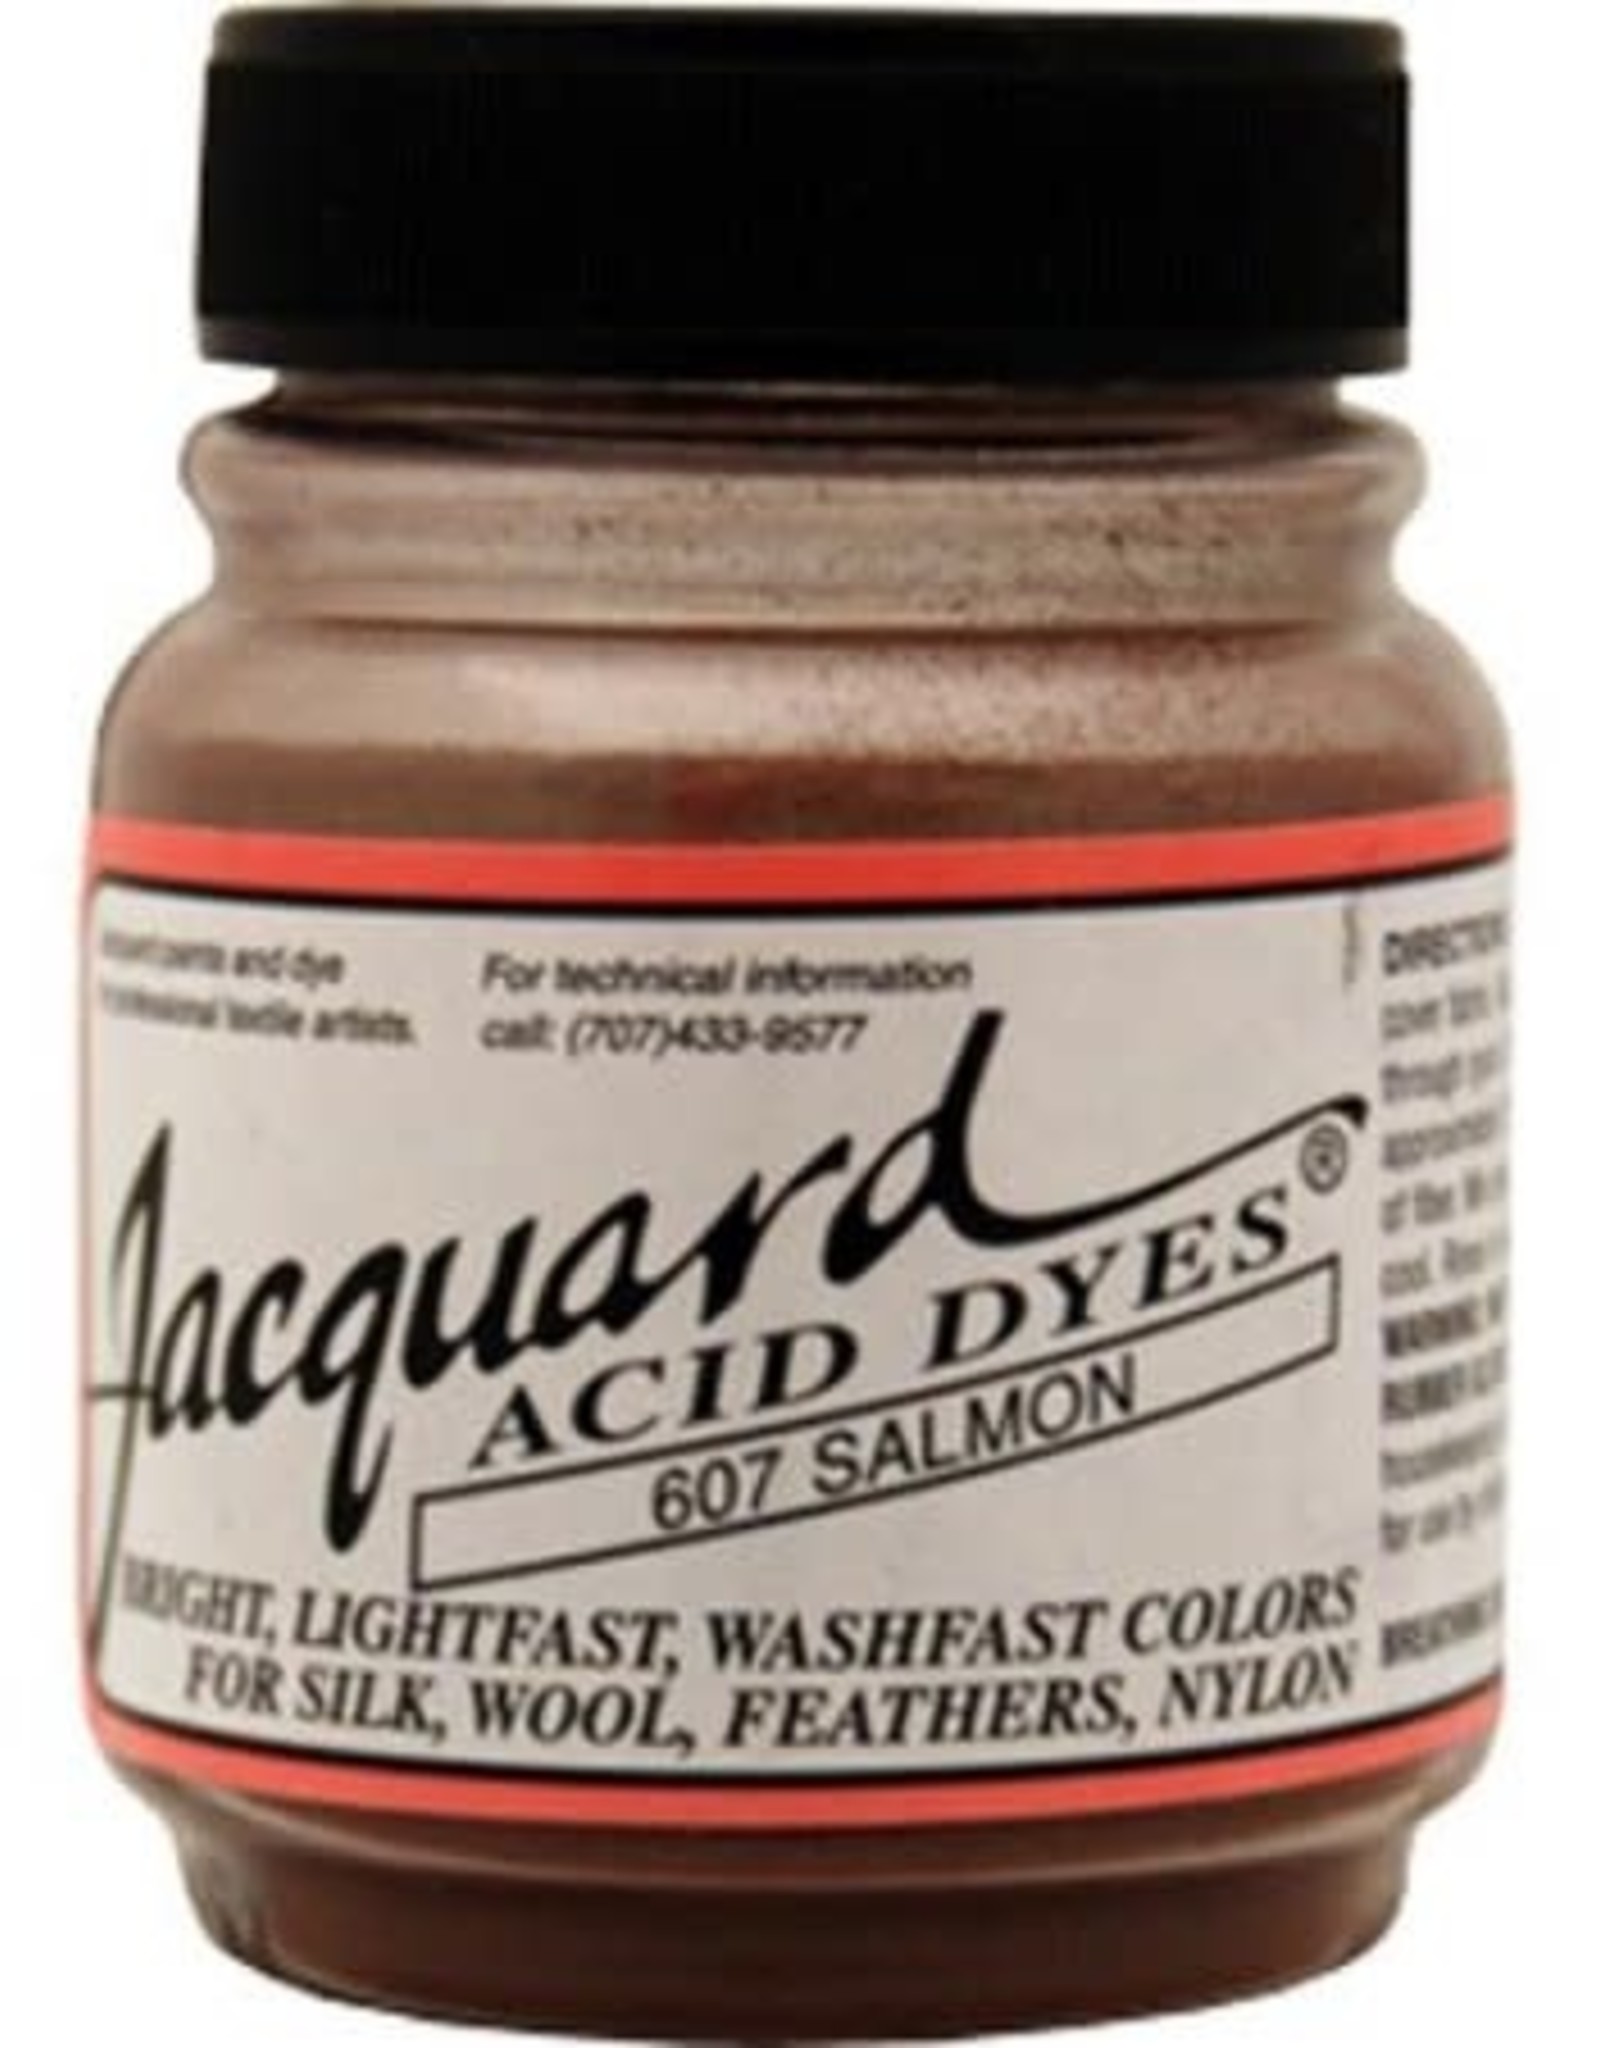 Jacquard Acid Dye Salmon